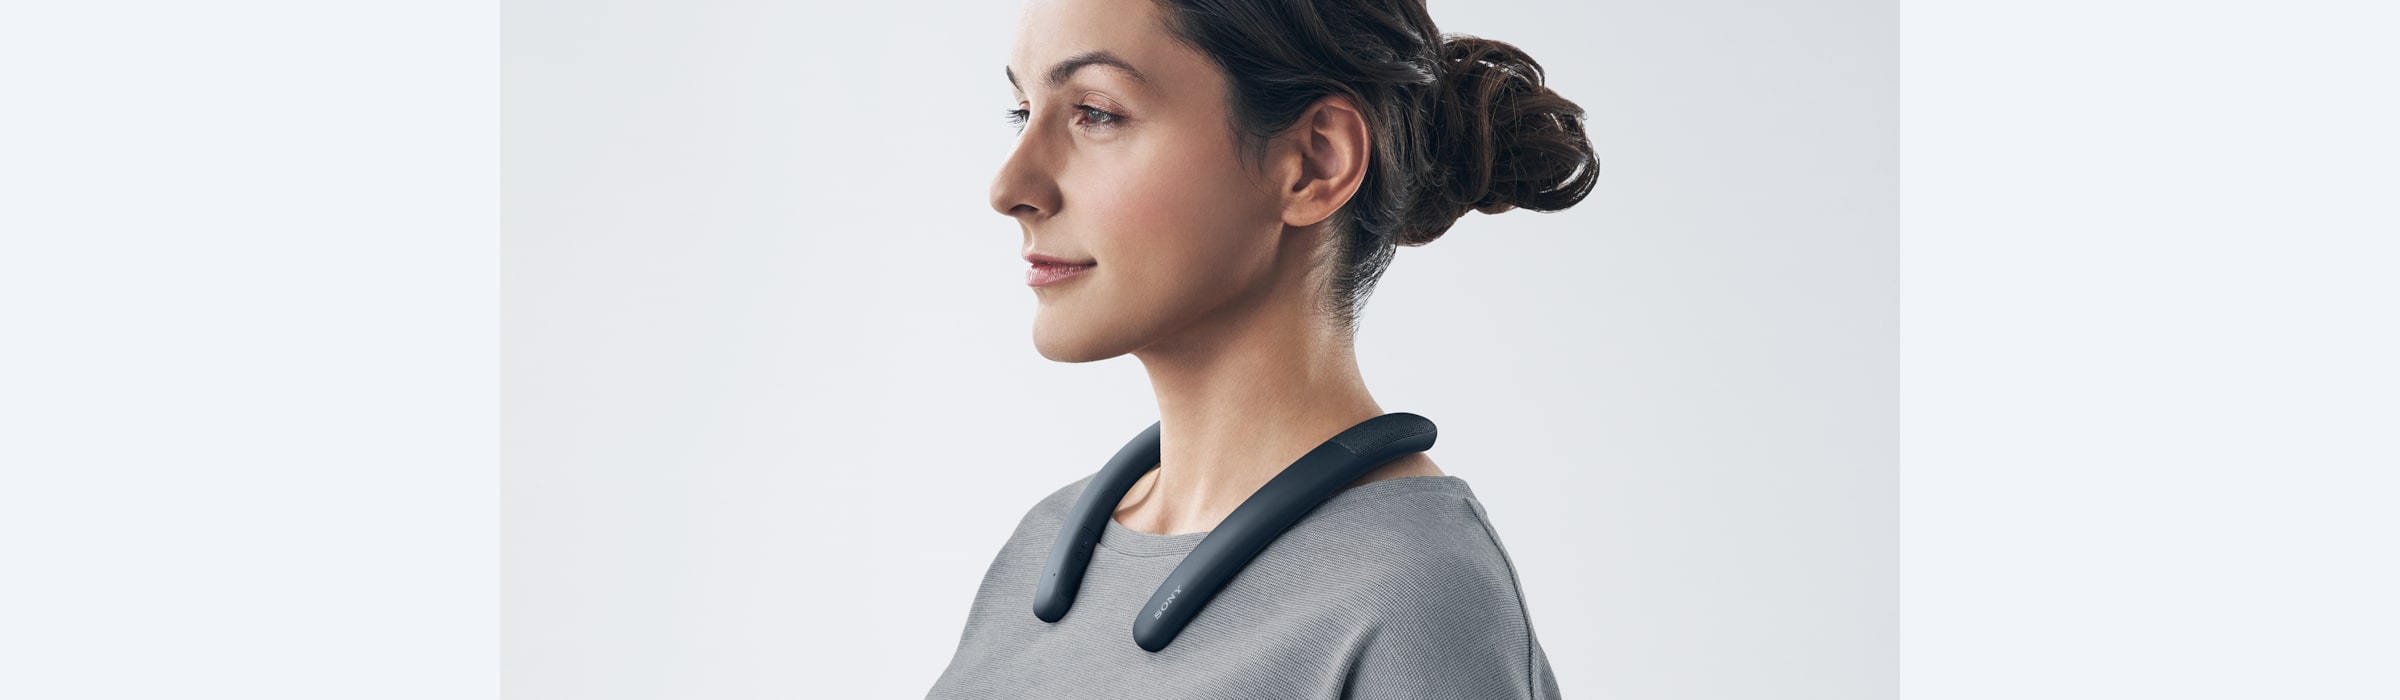 אישה מרכיבה את הרמקול האלחוטי עם רצועת הצוואר מדגם SRS-NB10 בצבע שחור